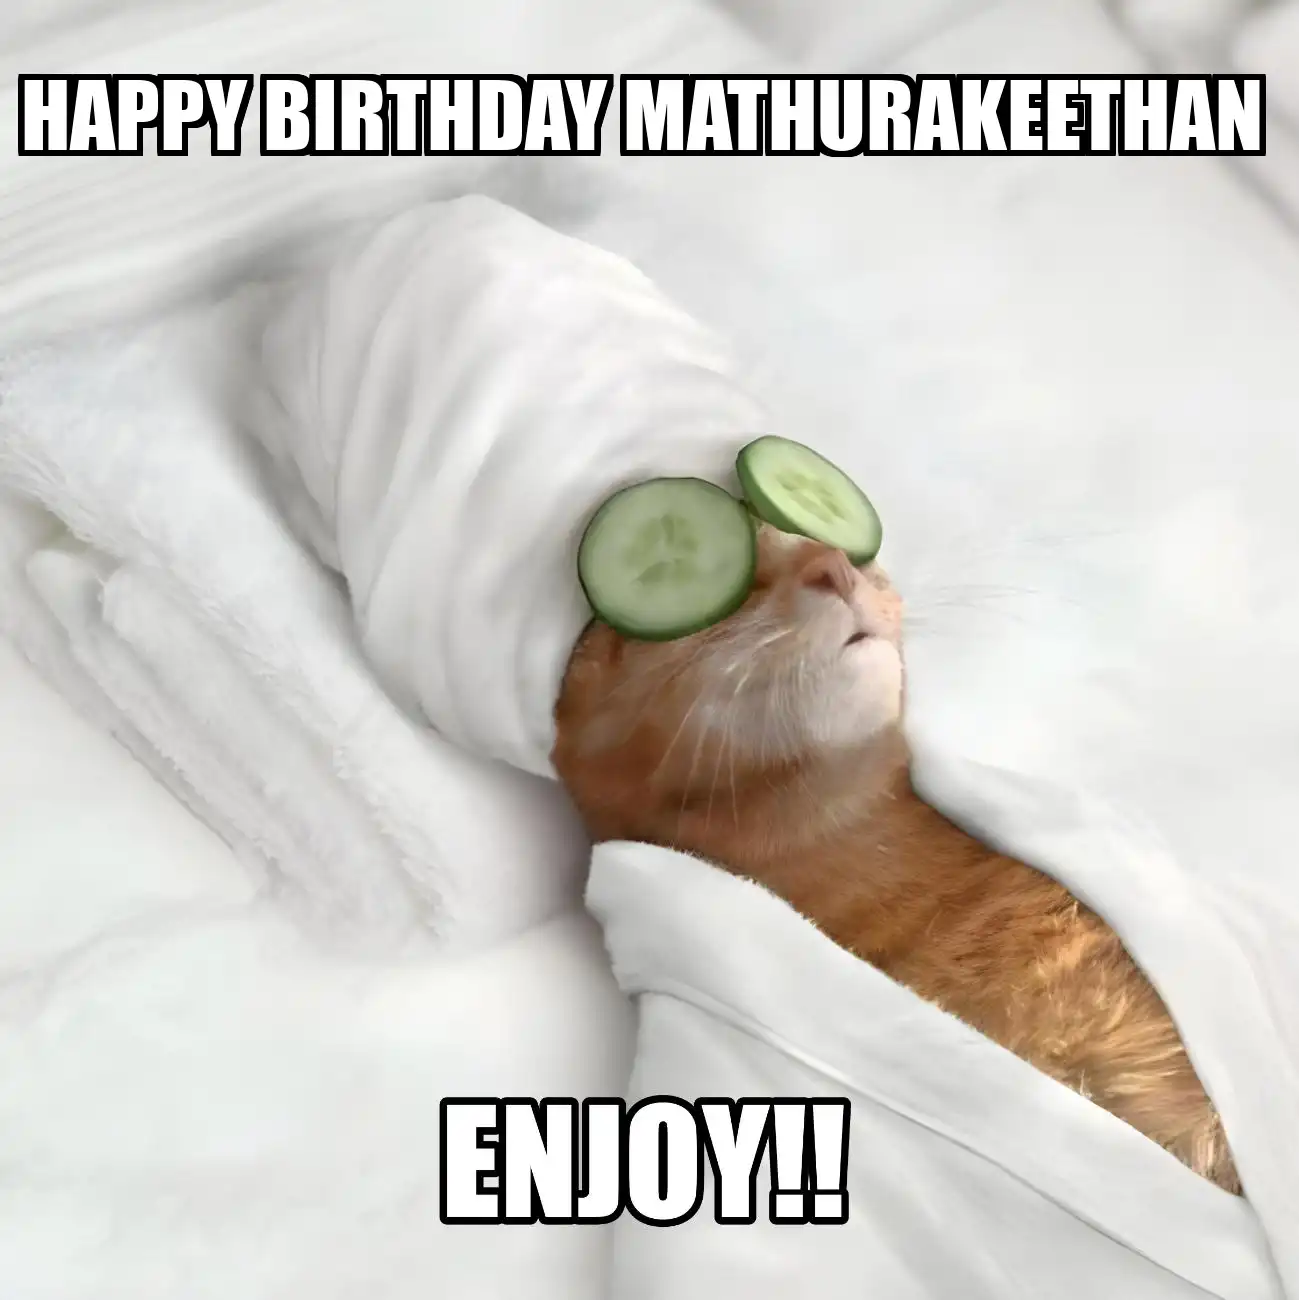 Happy Birthday Mathurakeethan Enjoy Cat Meme